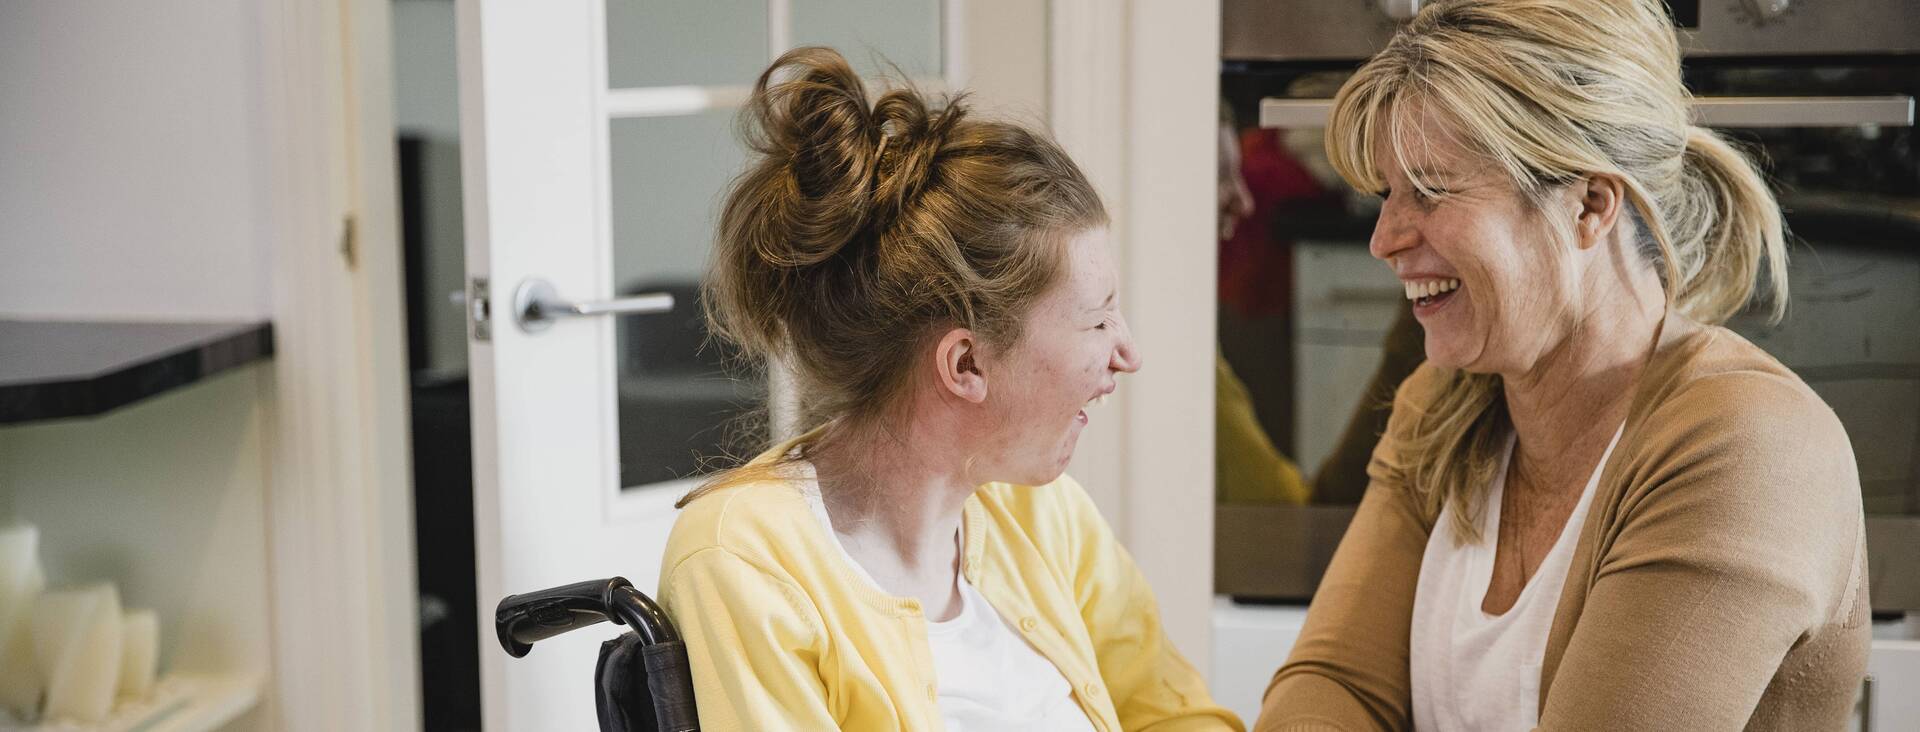 Eine Betreuerin spricht mit einer Frau im Rollstuhl